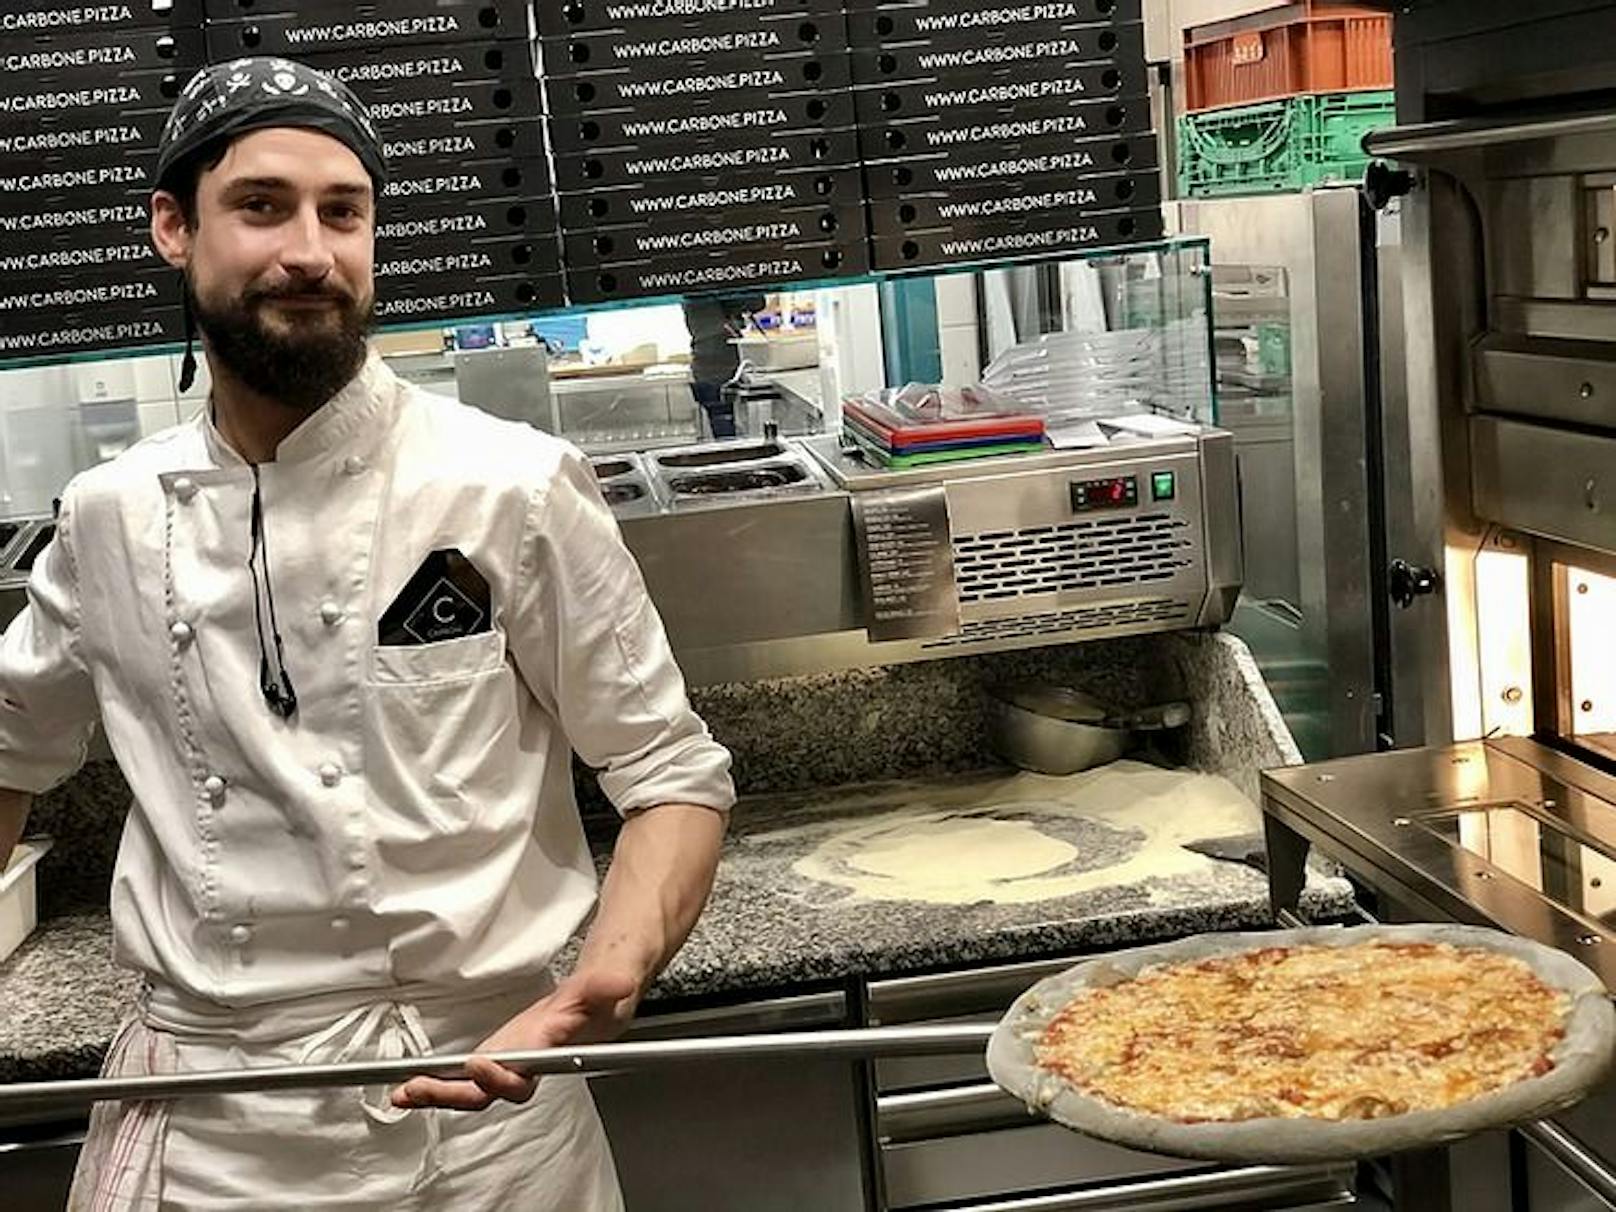 Pizzabäcker Cristian schiebt die Black-Pizza in den Steinbackofen.